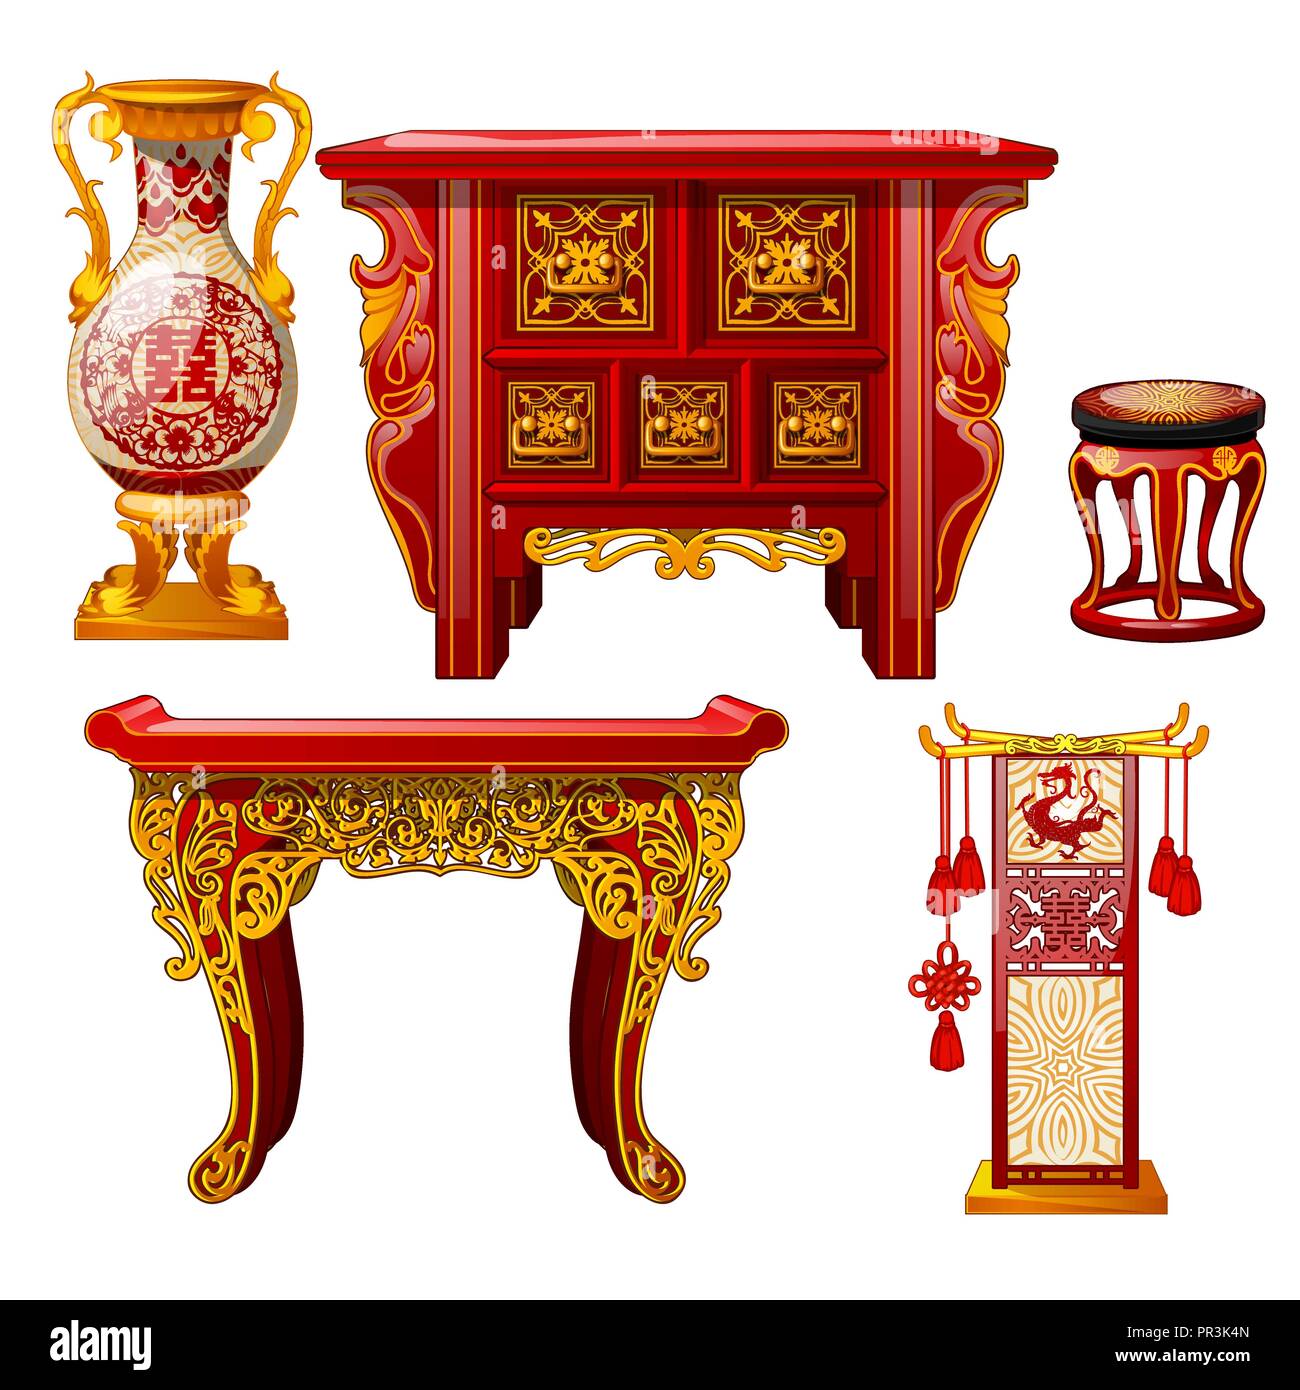 Satz verzierte Möbel im orientalischen Stil auf weißem Hintergrund. Red floor Vase, Tisch mit gold Ornament. Stilvolle Elemente der alten östlichen Inneren. Vektor cartoon Close-up Abbildung. Stock Vektor